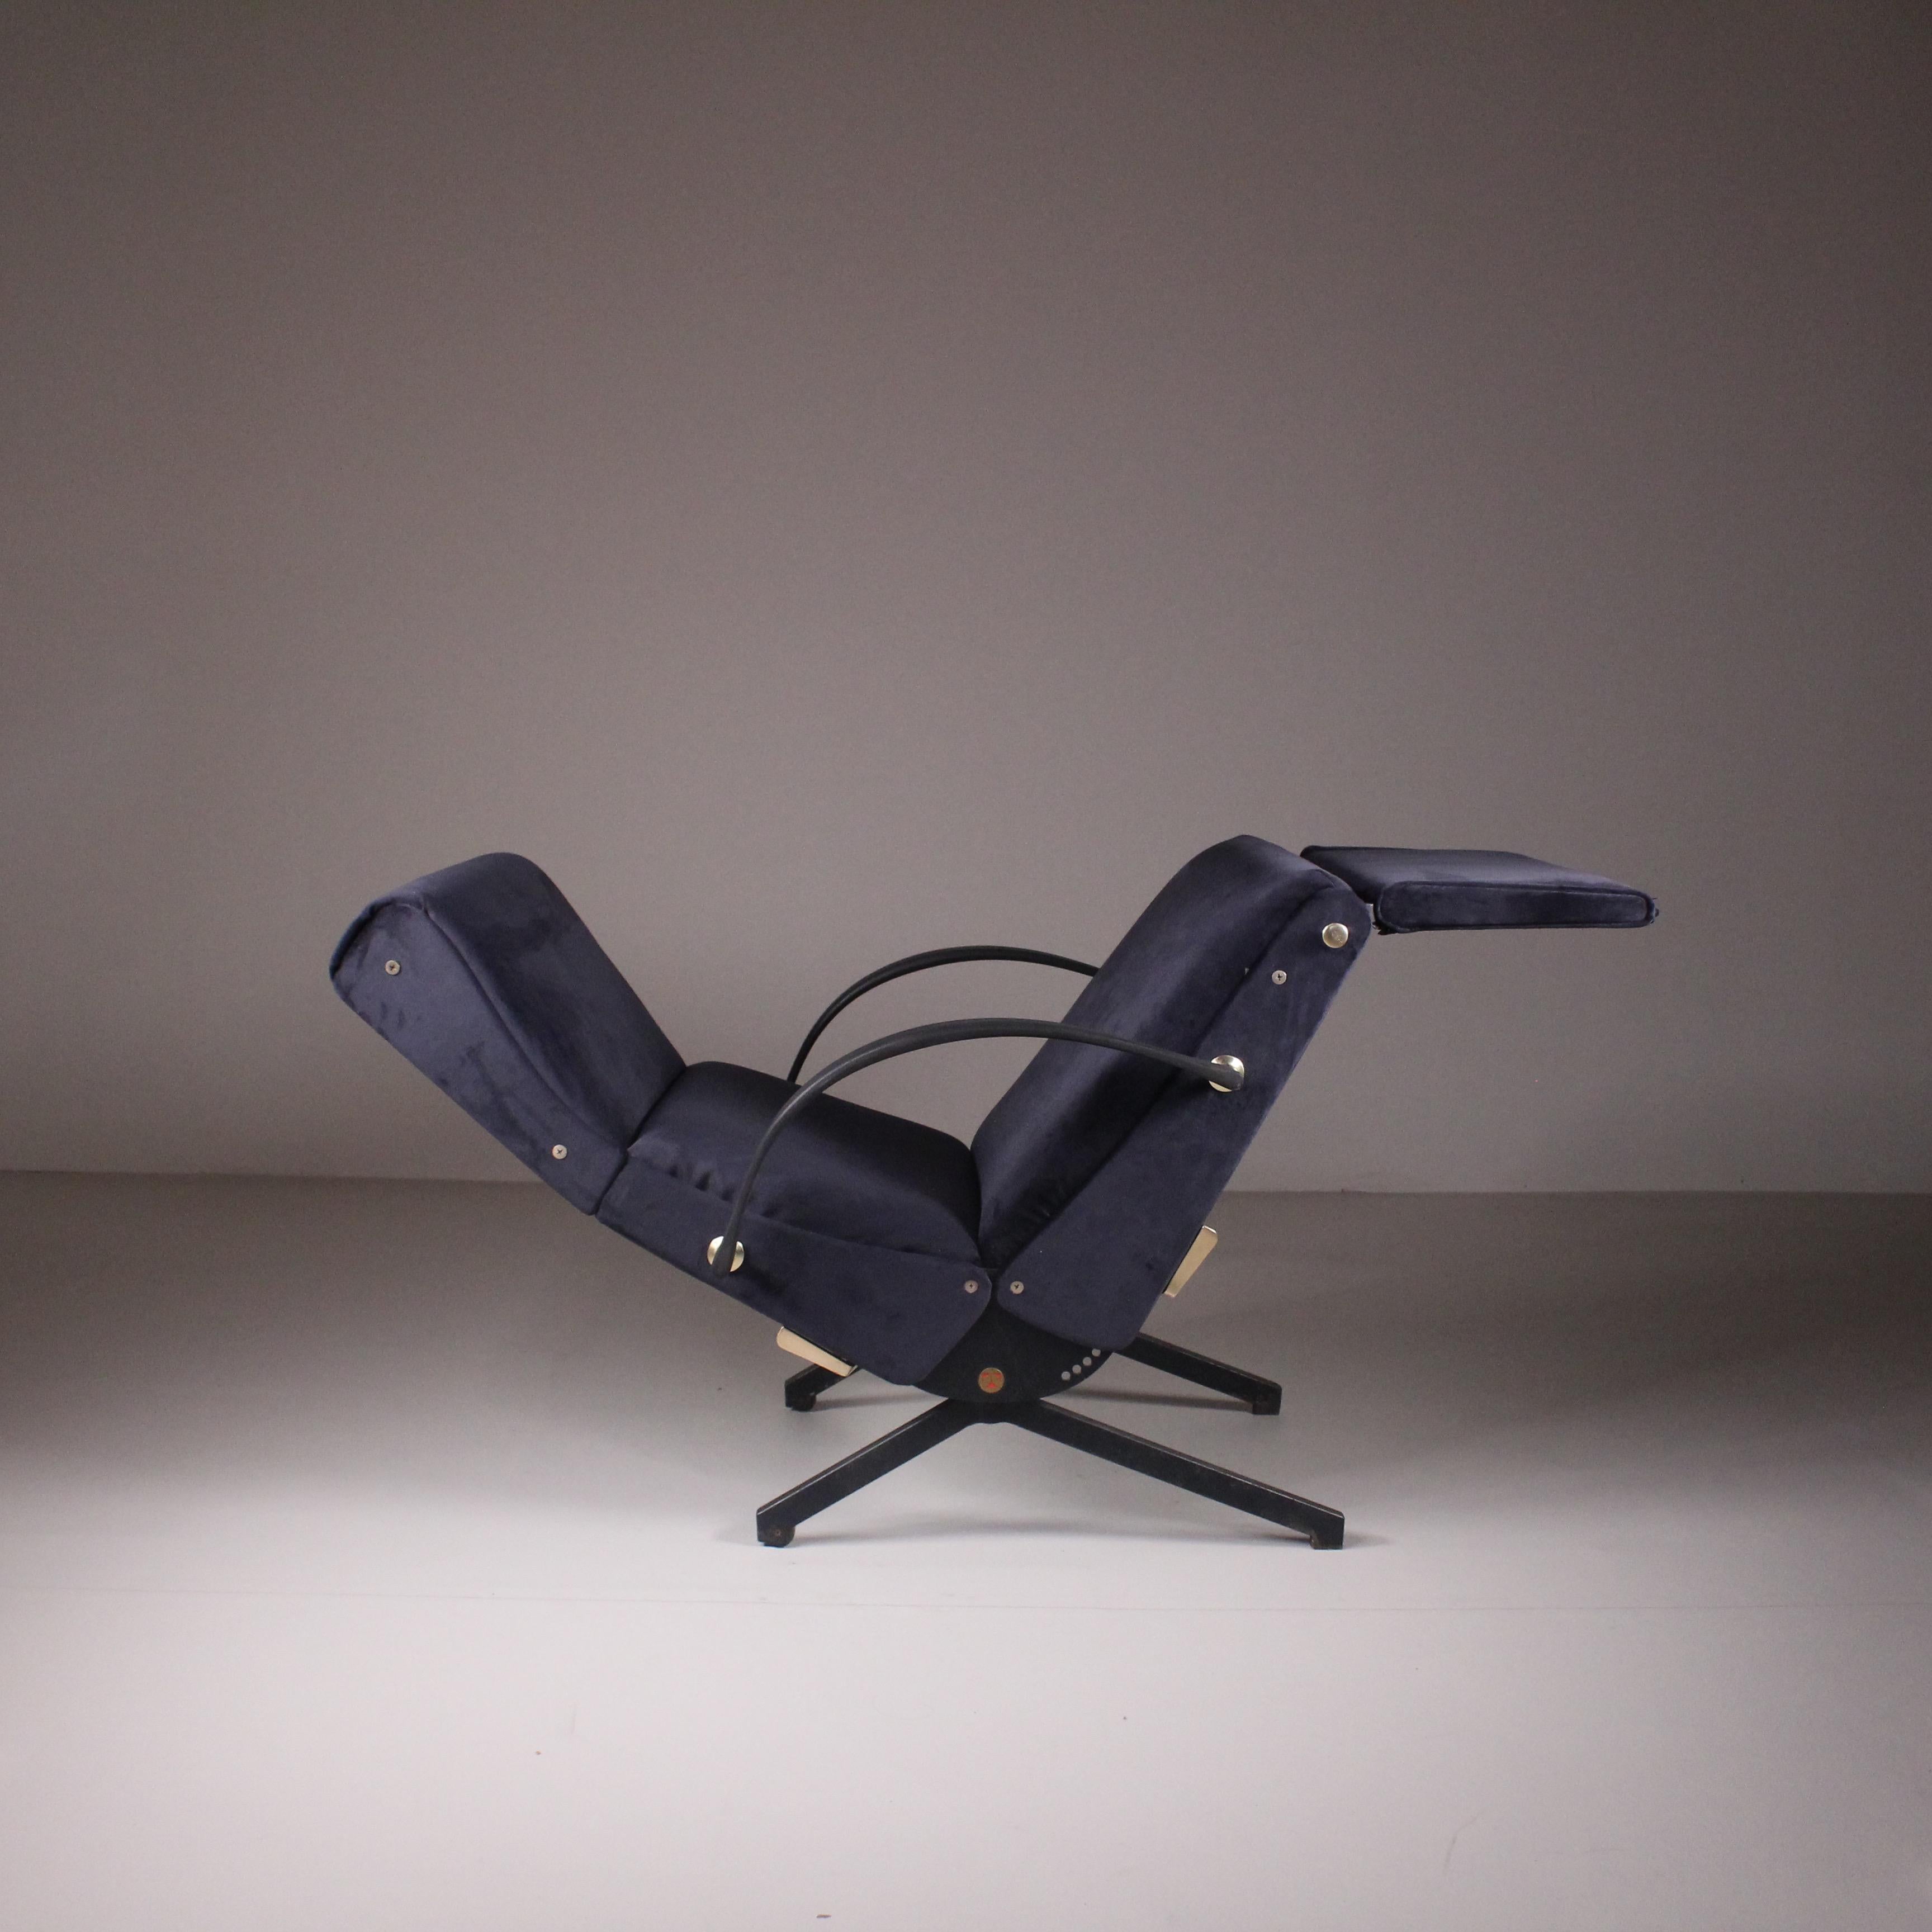 Sessel P40, Osvaldo Borsani, Tecno, 1950er Jahre. Ein innovativer Sessel von Osvaldo Borsani, ausgestattet mit fortschrittlicher Technologie, um die Möglichkeiten der klassischen Chaiselongue zu maximieren. Tecno stellte sich der Herausforderung,